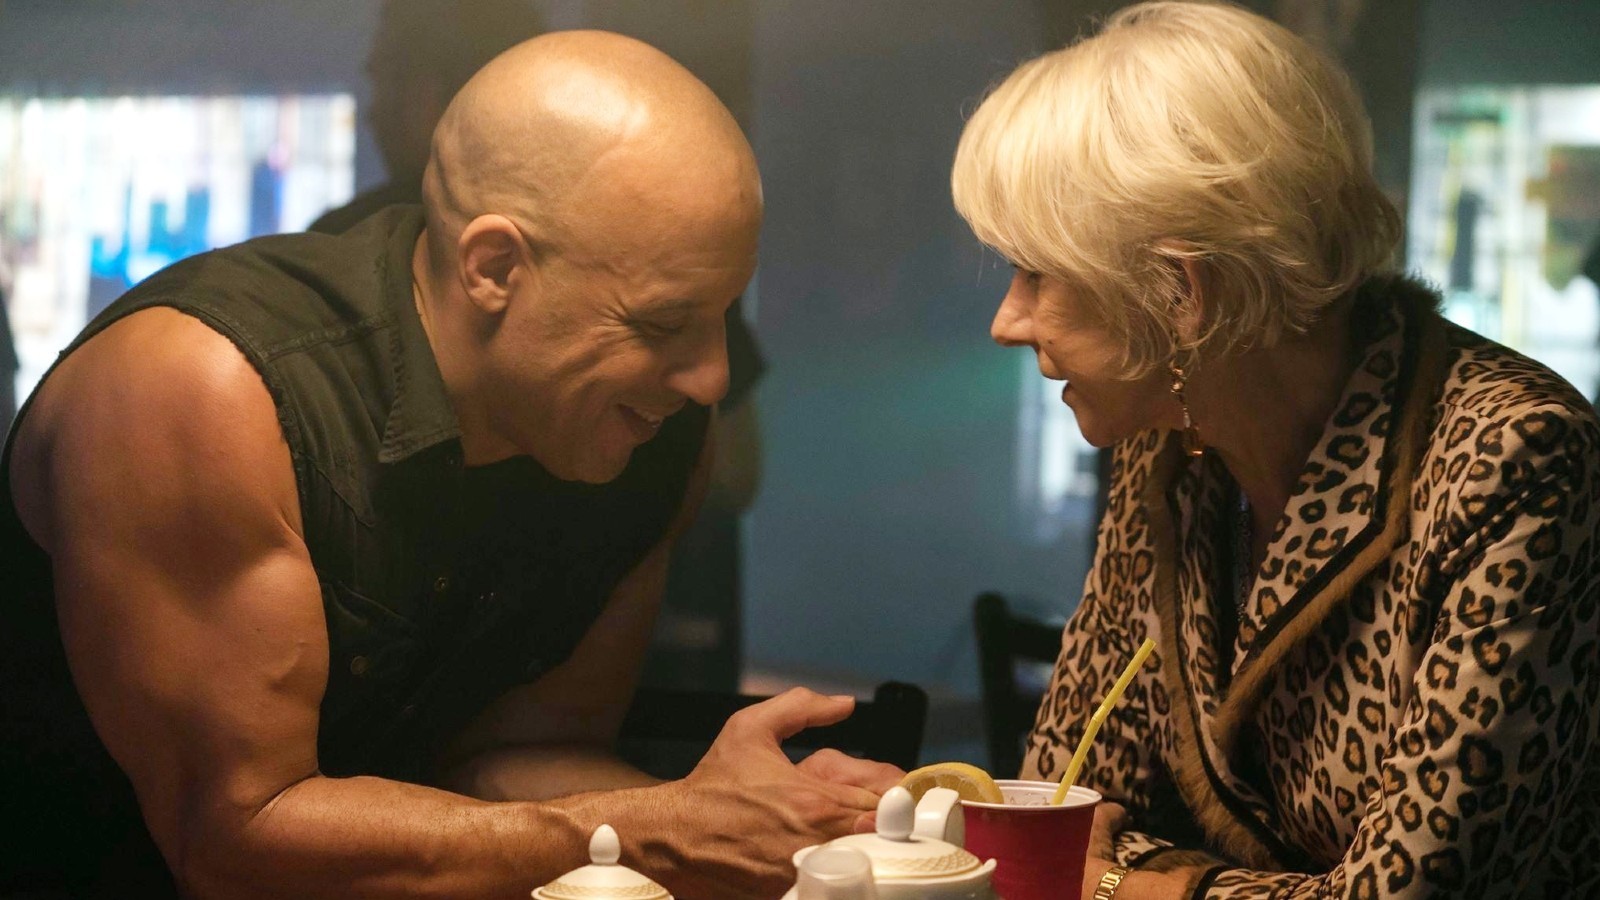 Helen Mirren and Vin Diesel in a still from the movie